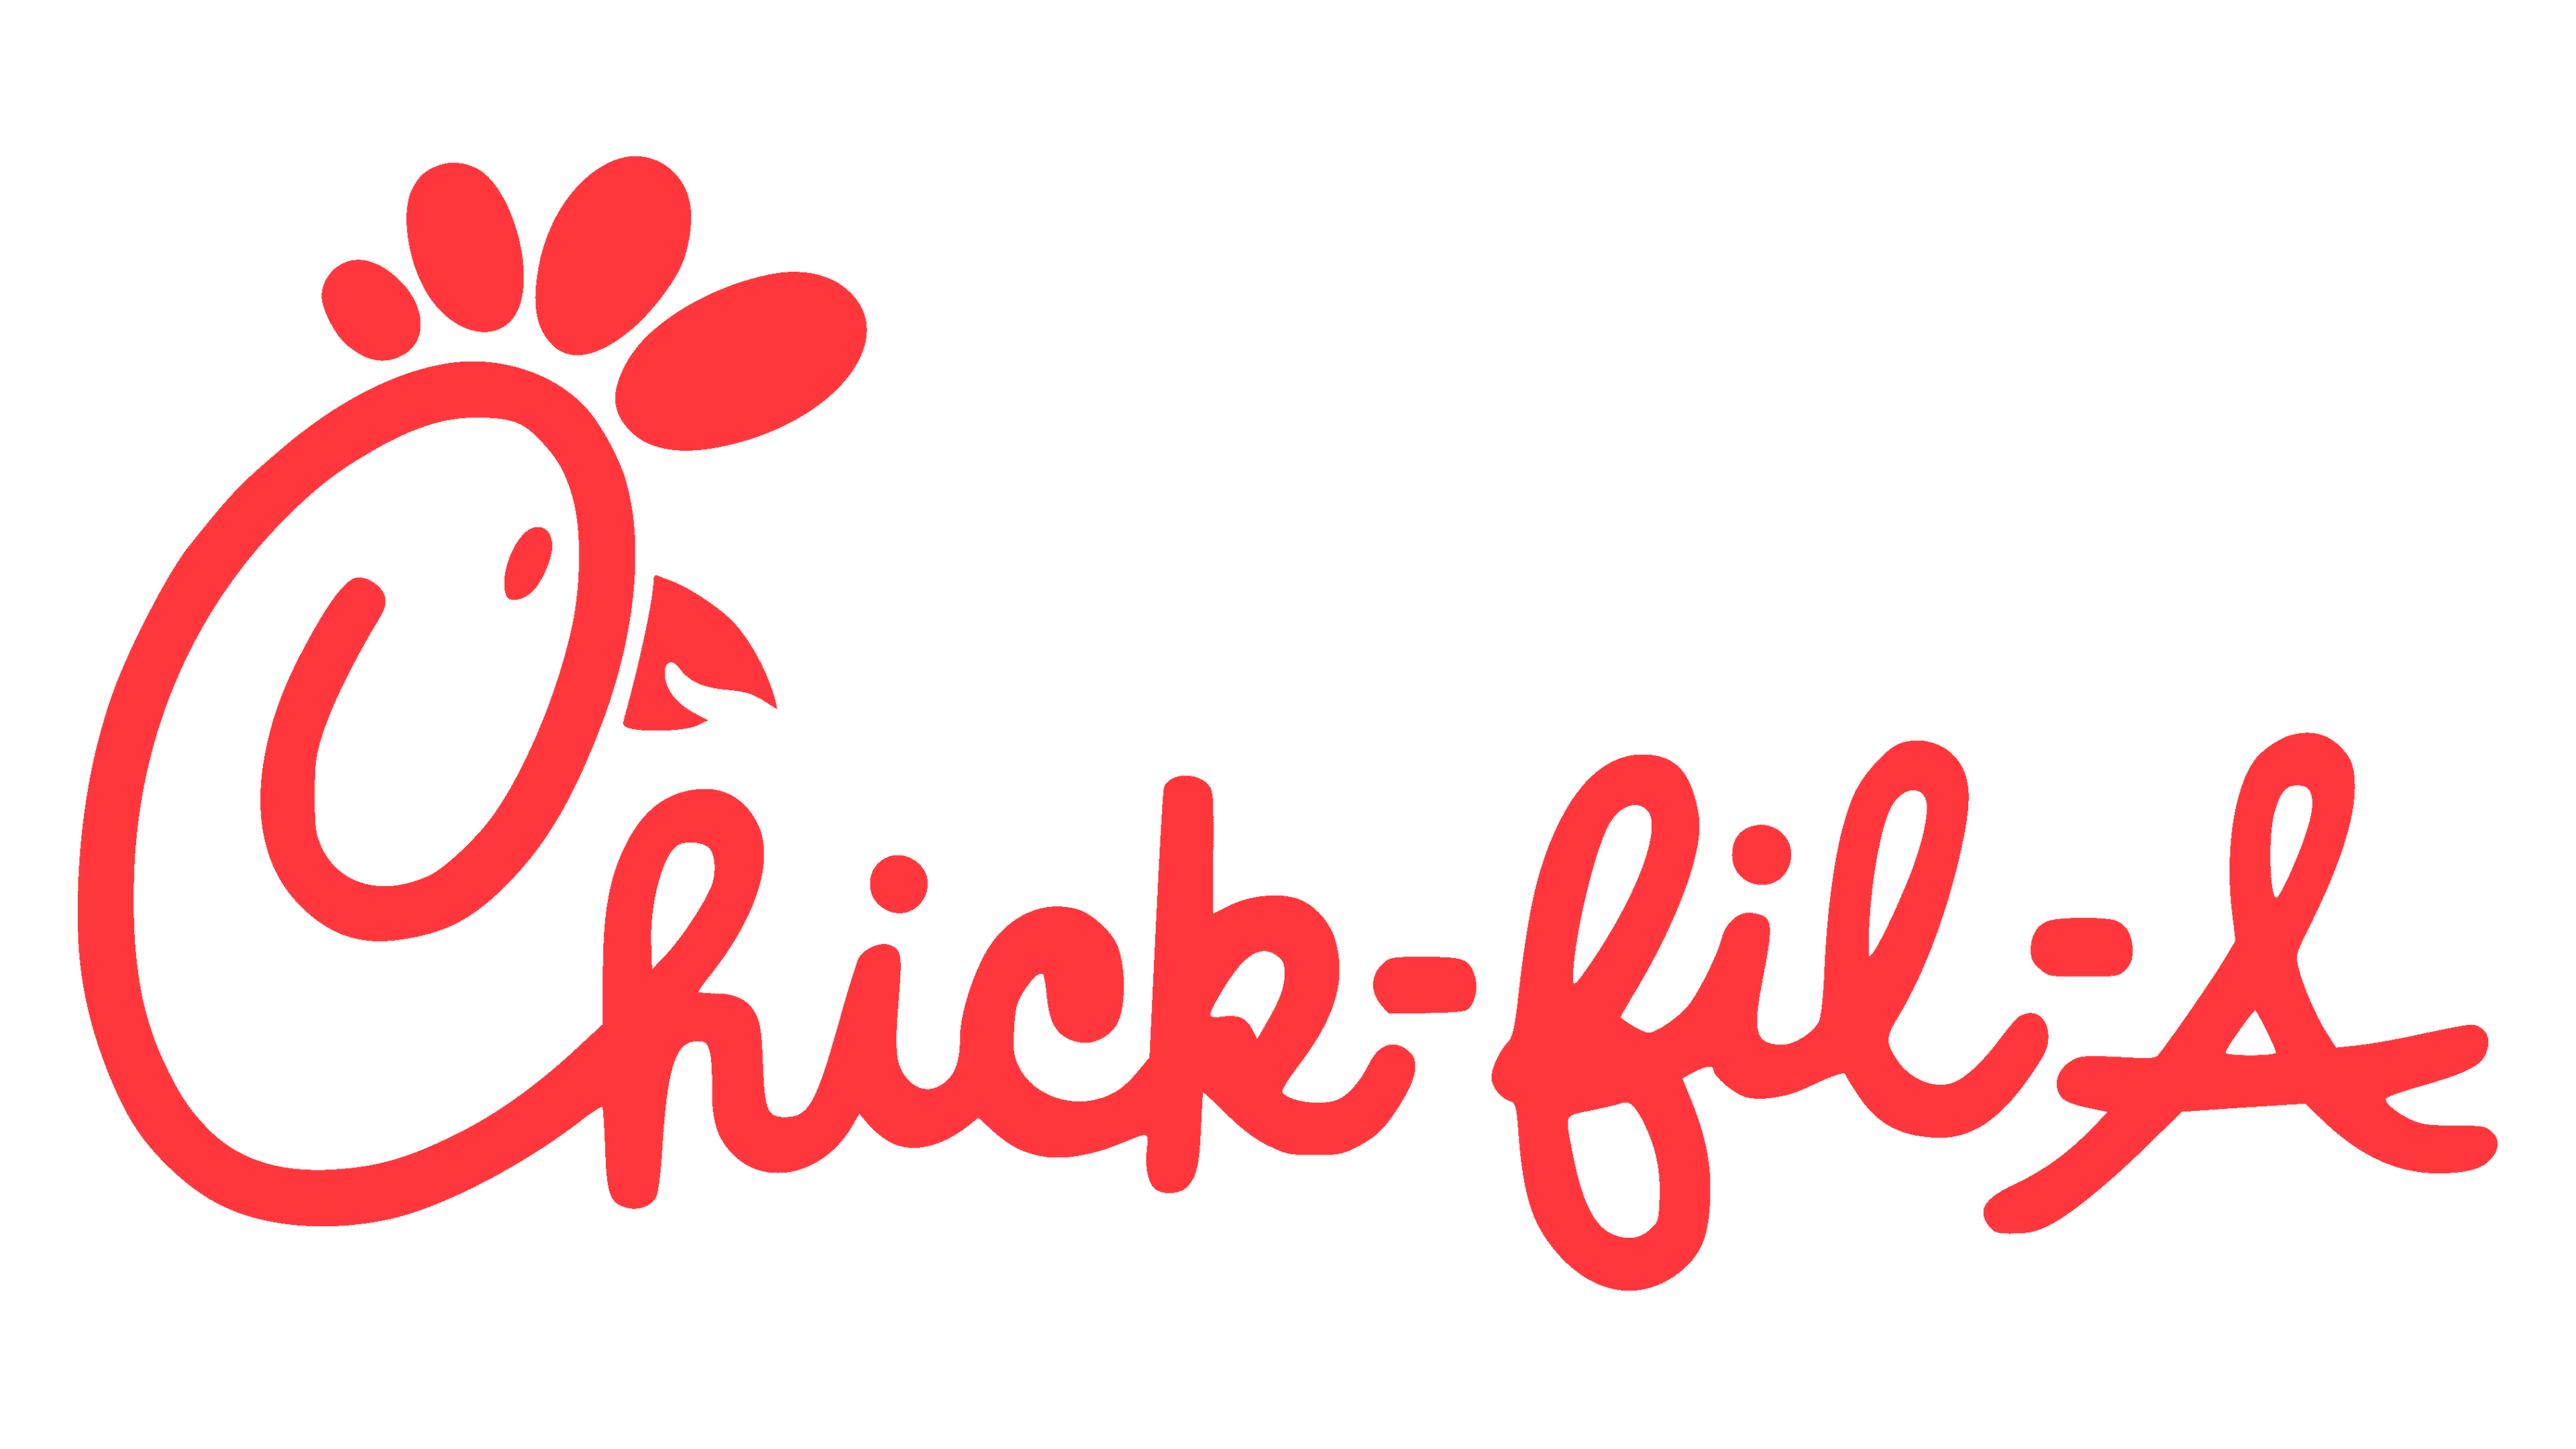 Restaurants-Chick-fil-A